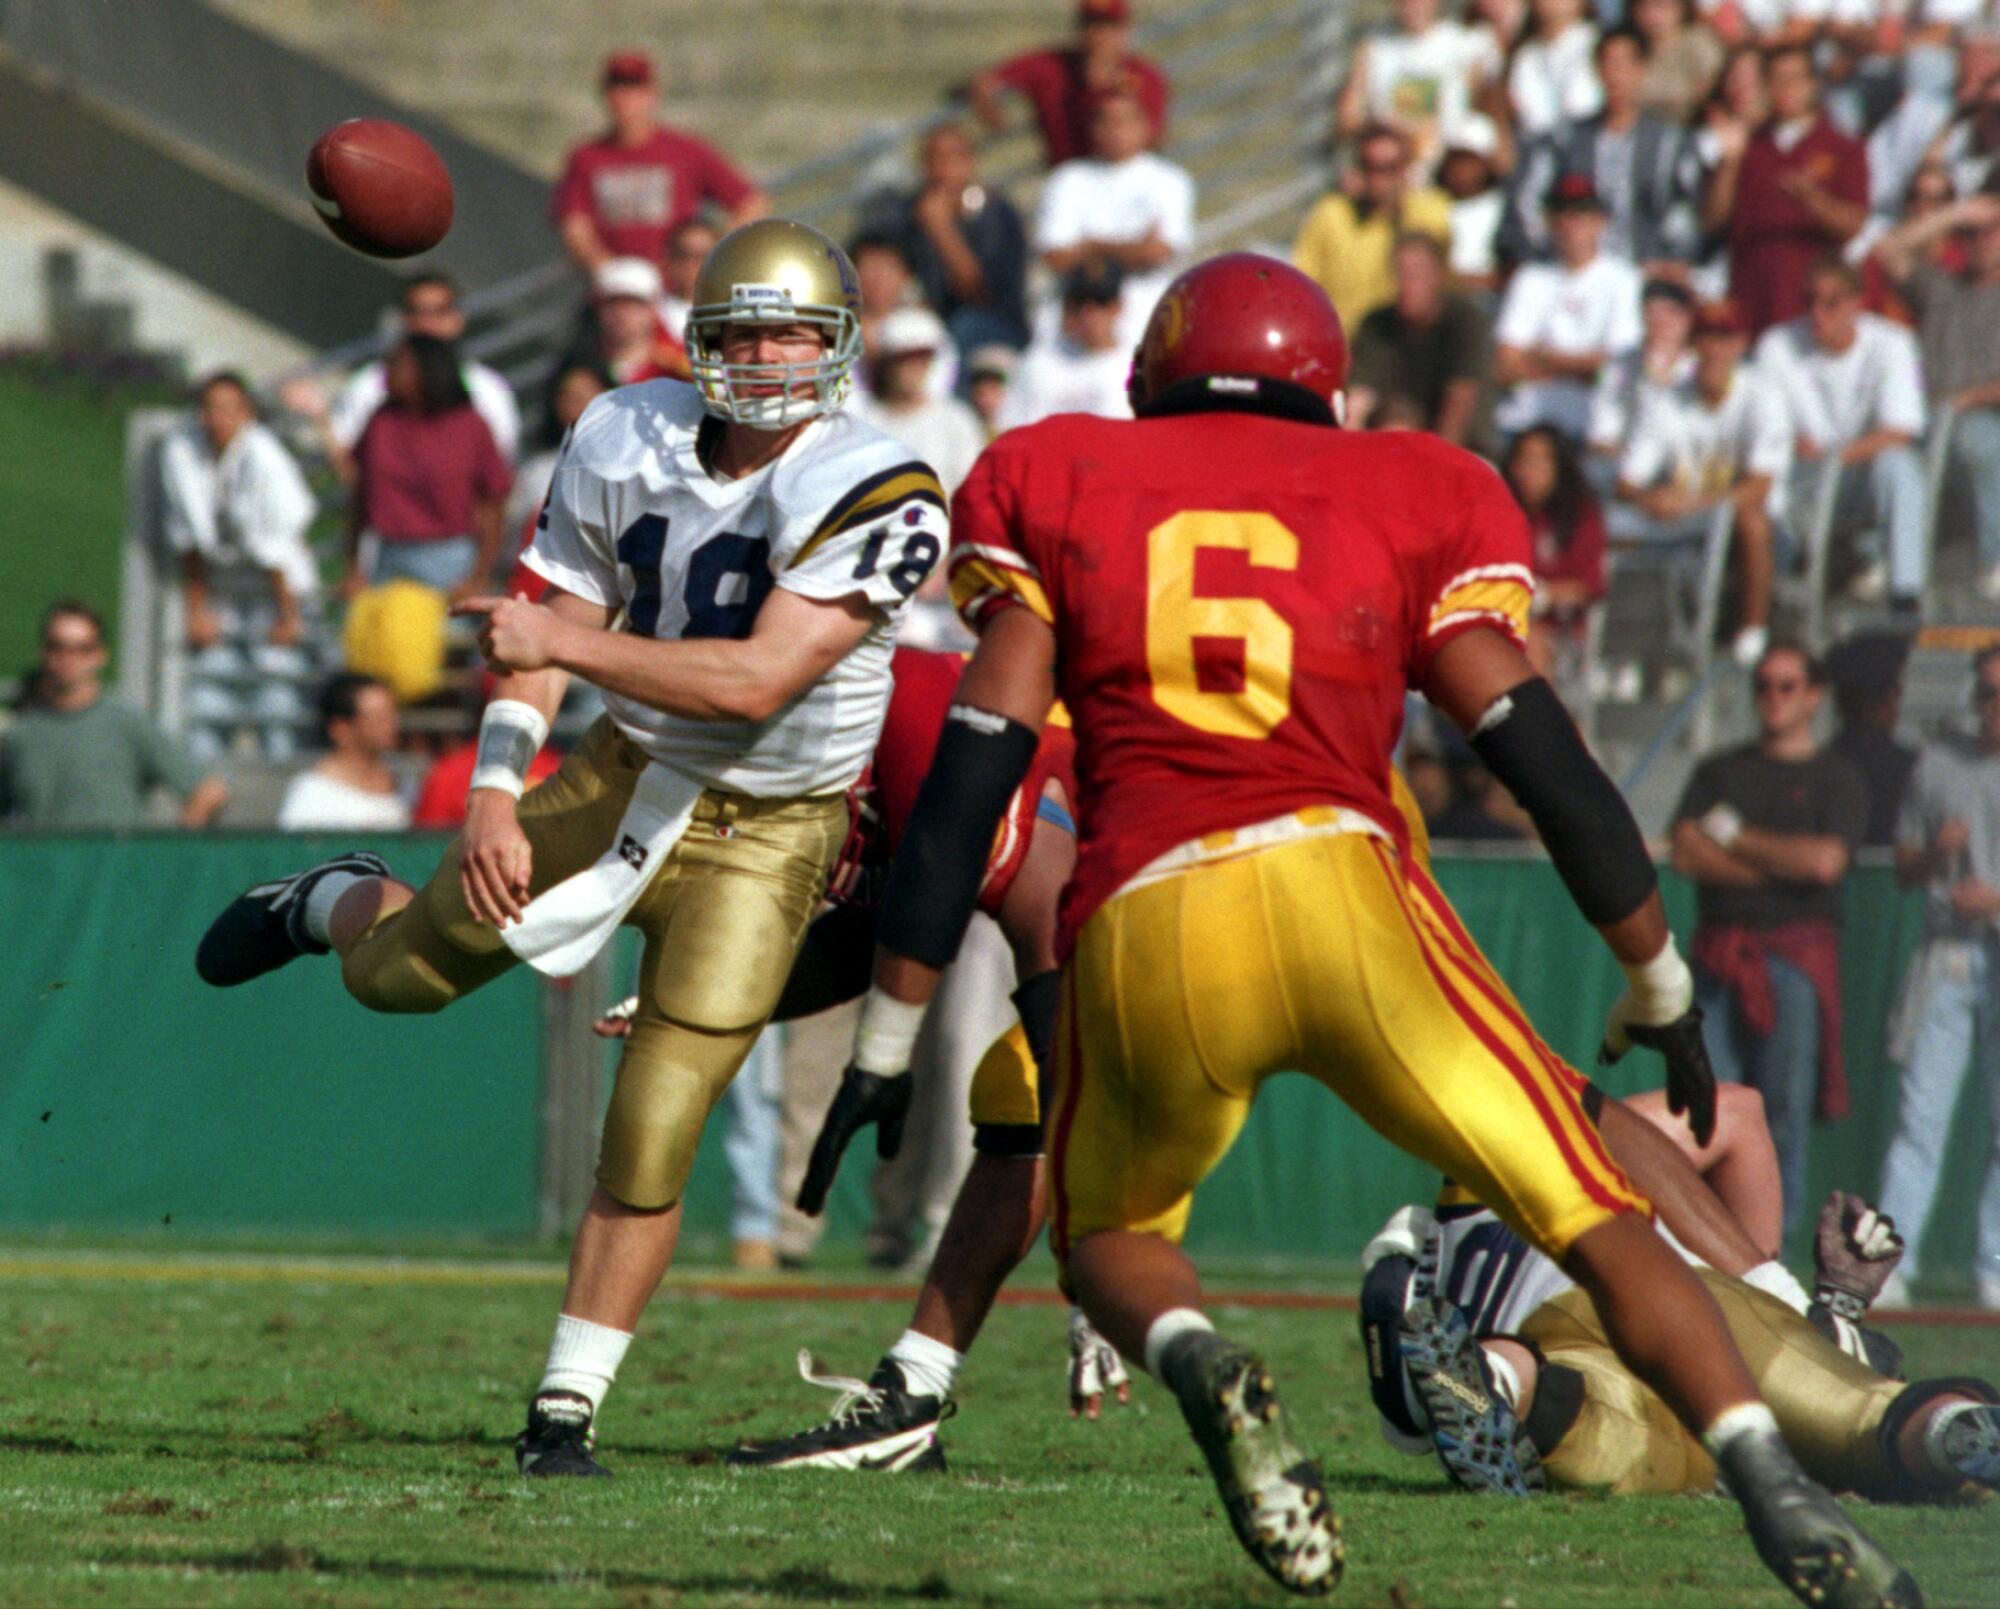 1997 年，加州大学洛杉矶分校 (UCLA) 四分卫凯德·麦克诺 (Cade McNown) 在对阵竞争对手南加州大学 (USC) 的比赛中试图摆脱防守球员。